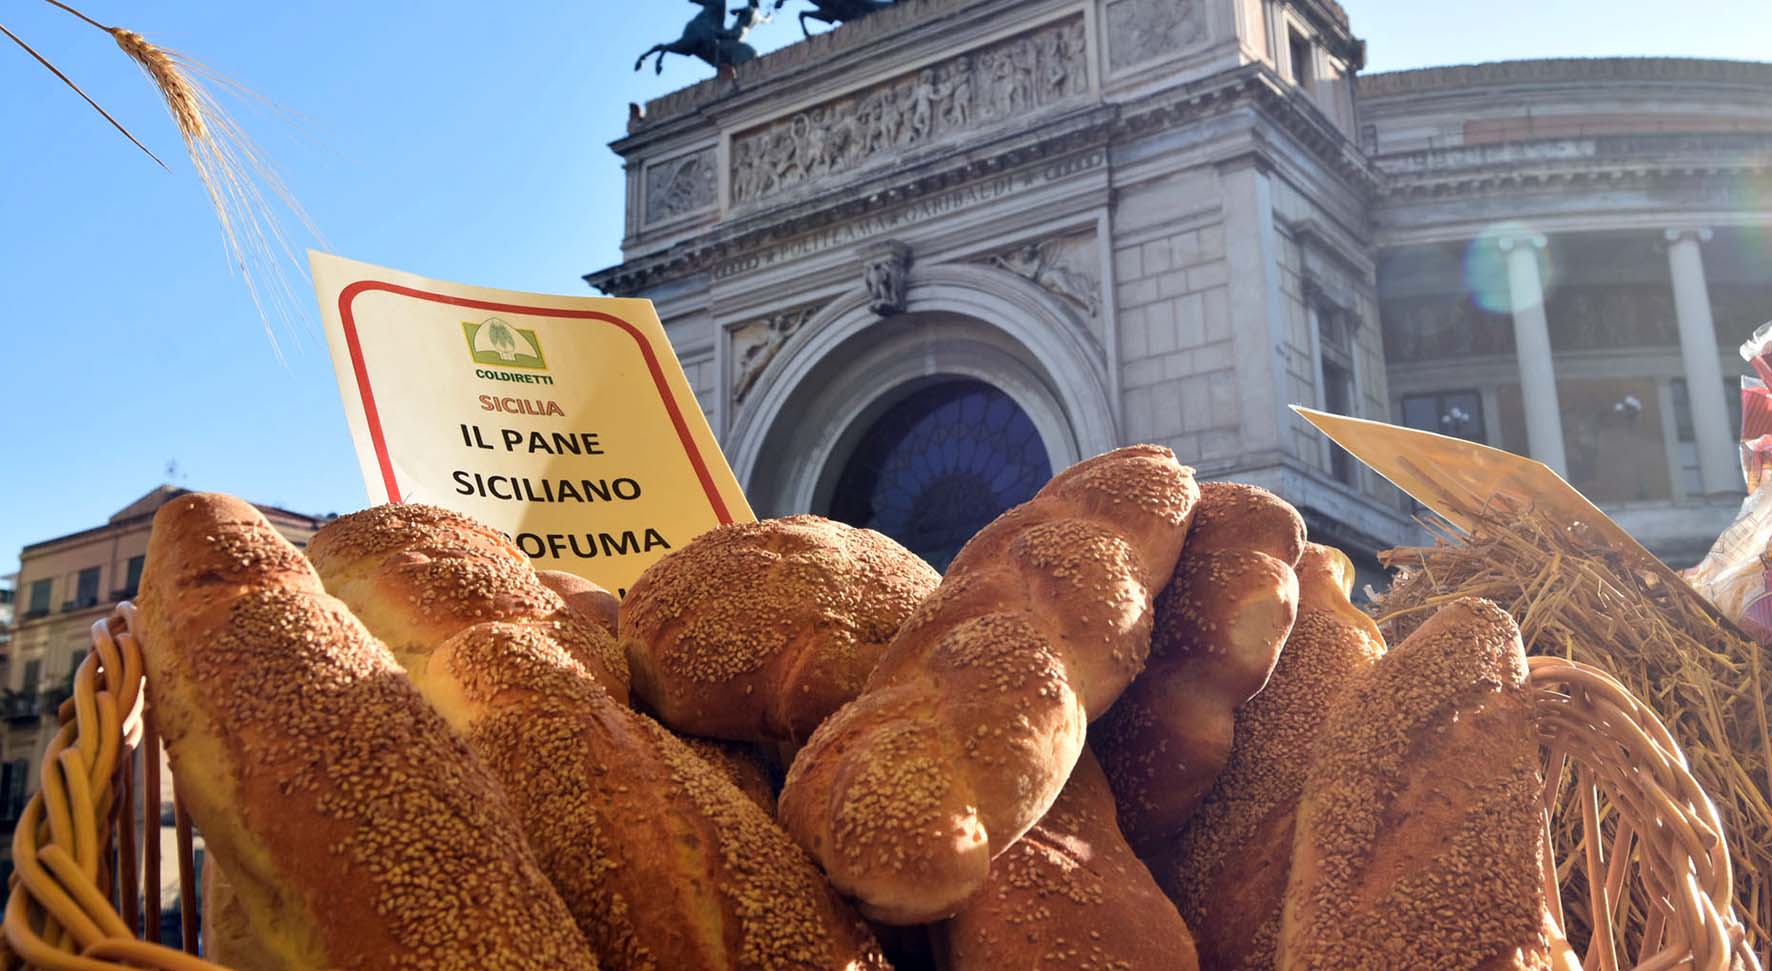 Coldiretti guerra del grano manifestazione bari pane sicilia